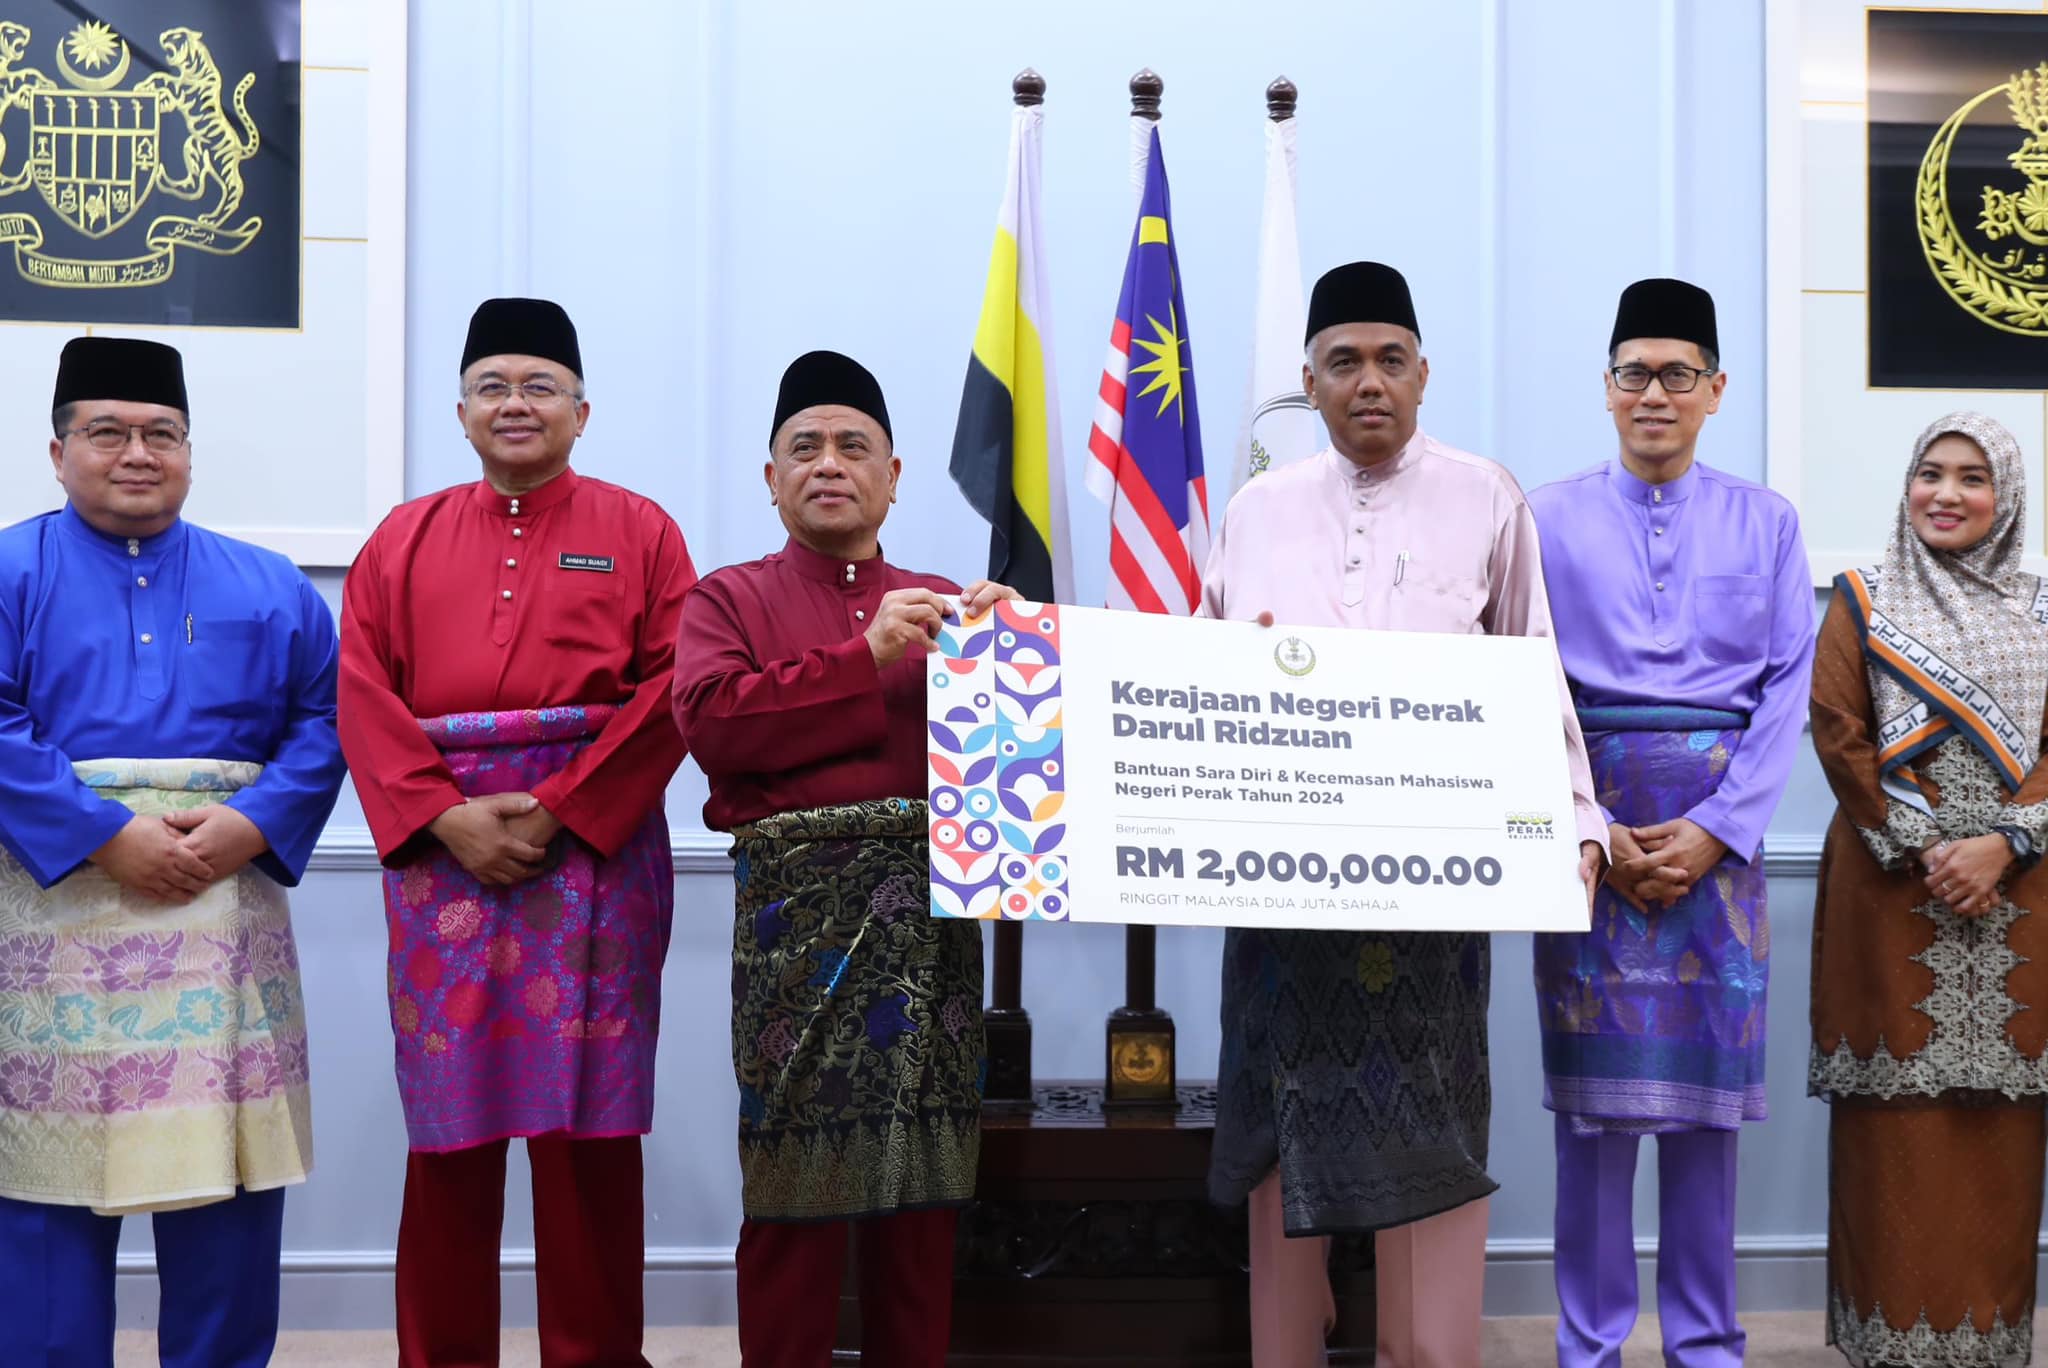 RM2 Juta Untuk Bantuan Sara Diri, Bantuan Kecemasan Mahasiswa Perak 2024